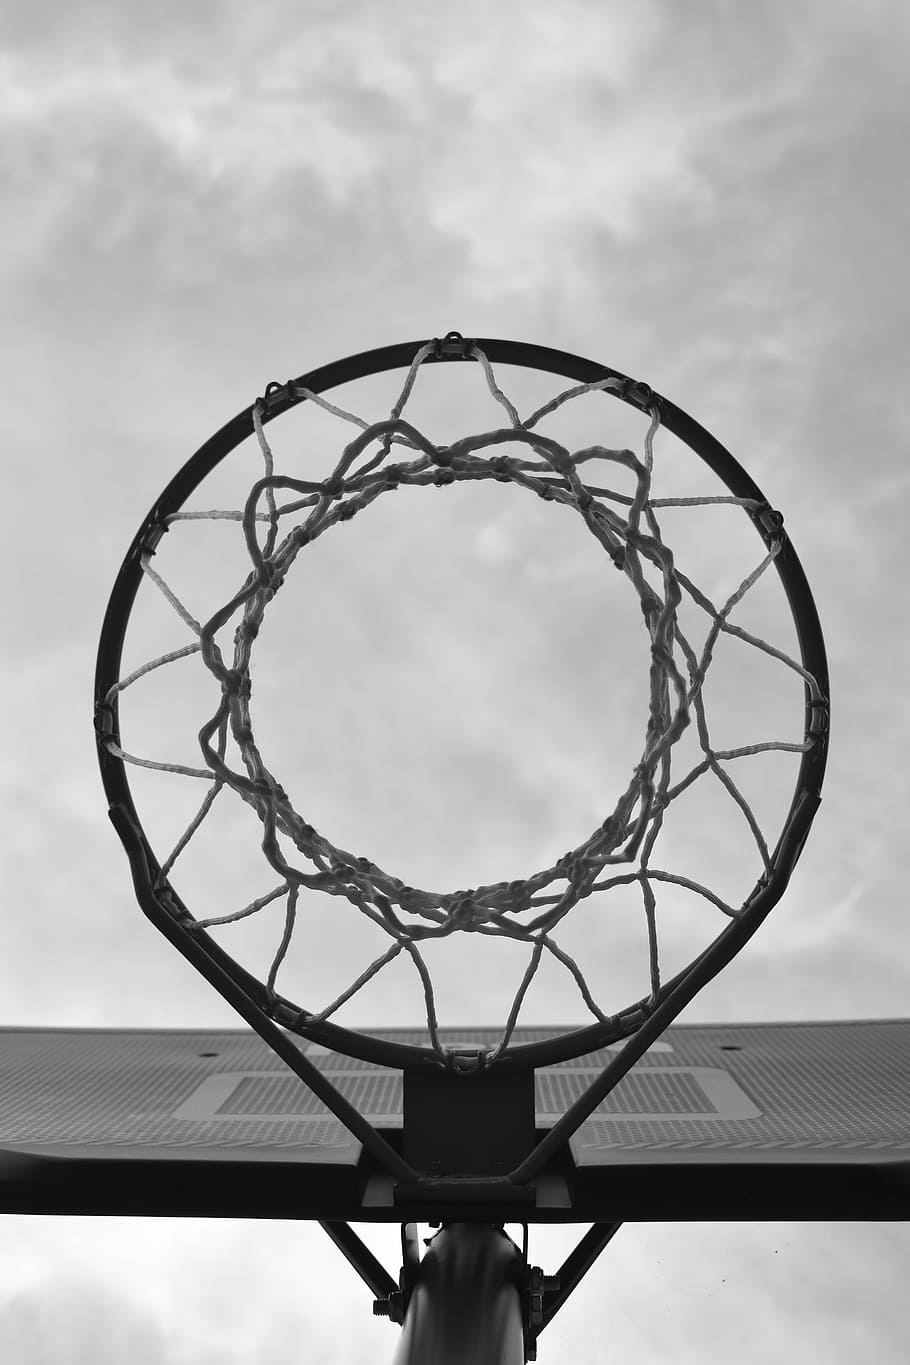 bottom shot photo of basketball hoop, sport, net, urban, basketball - sport